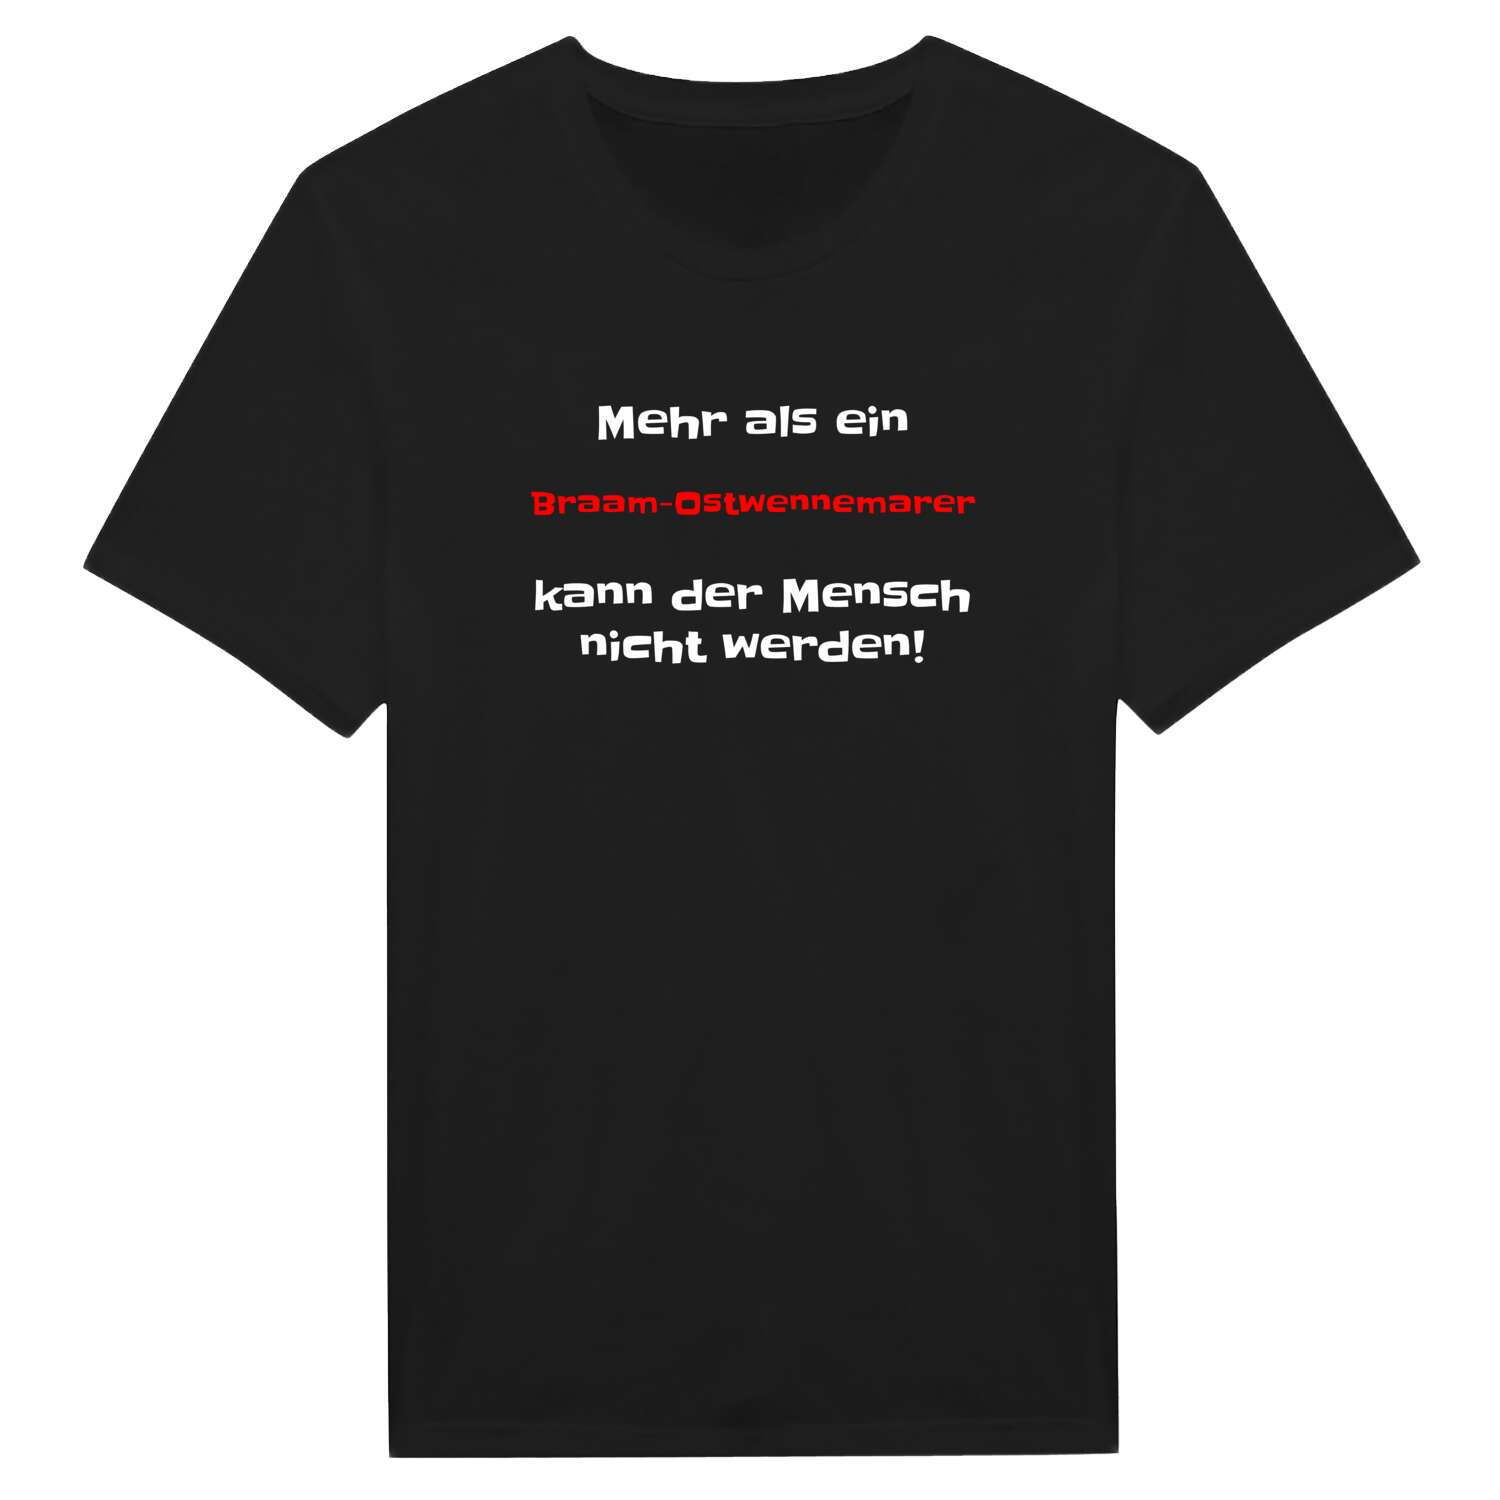 Braam-Ostwennemar T-Shirt »Mehr als ein«